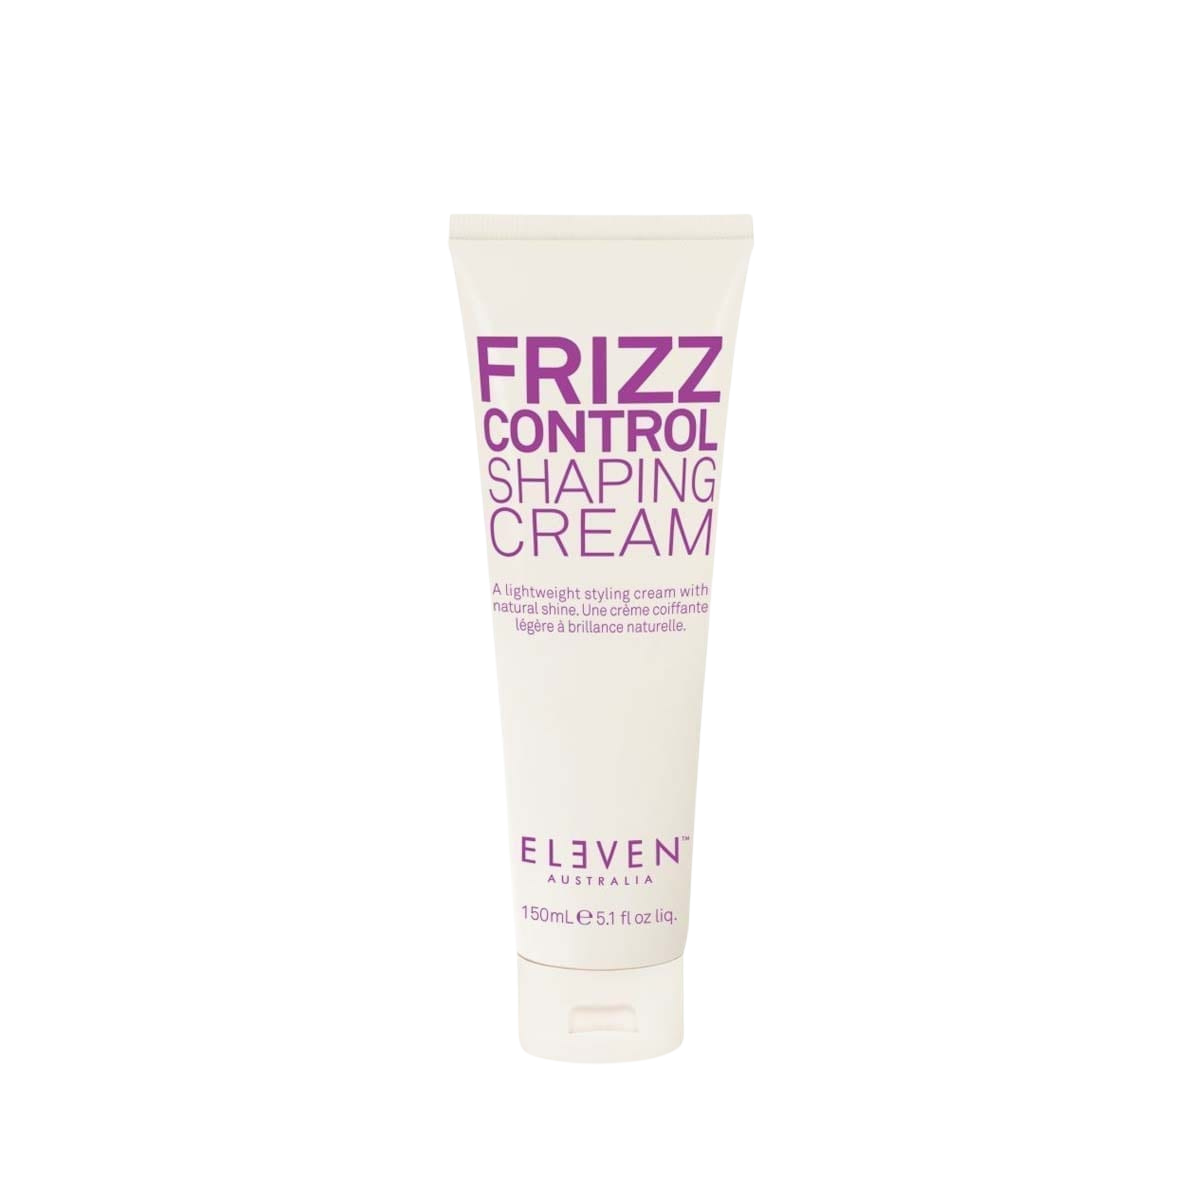 Eleven Australia Frizz Control Shaping Cream 5.1 oz